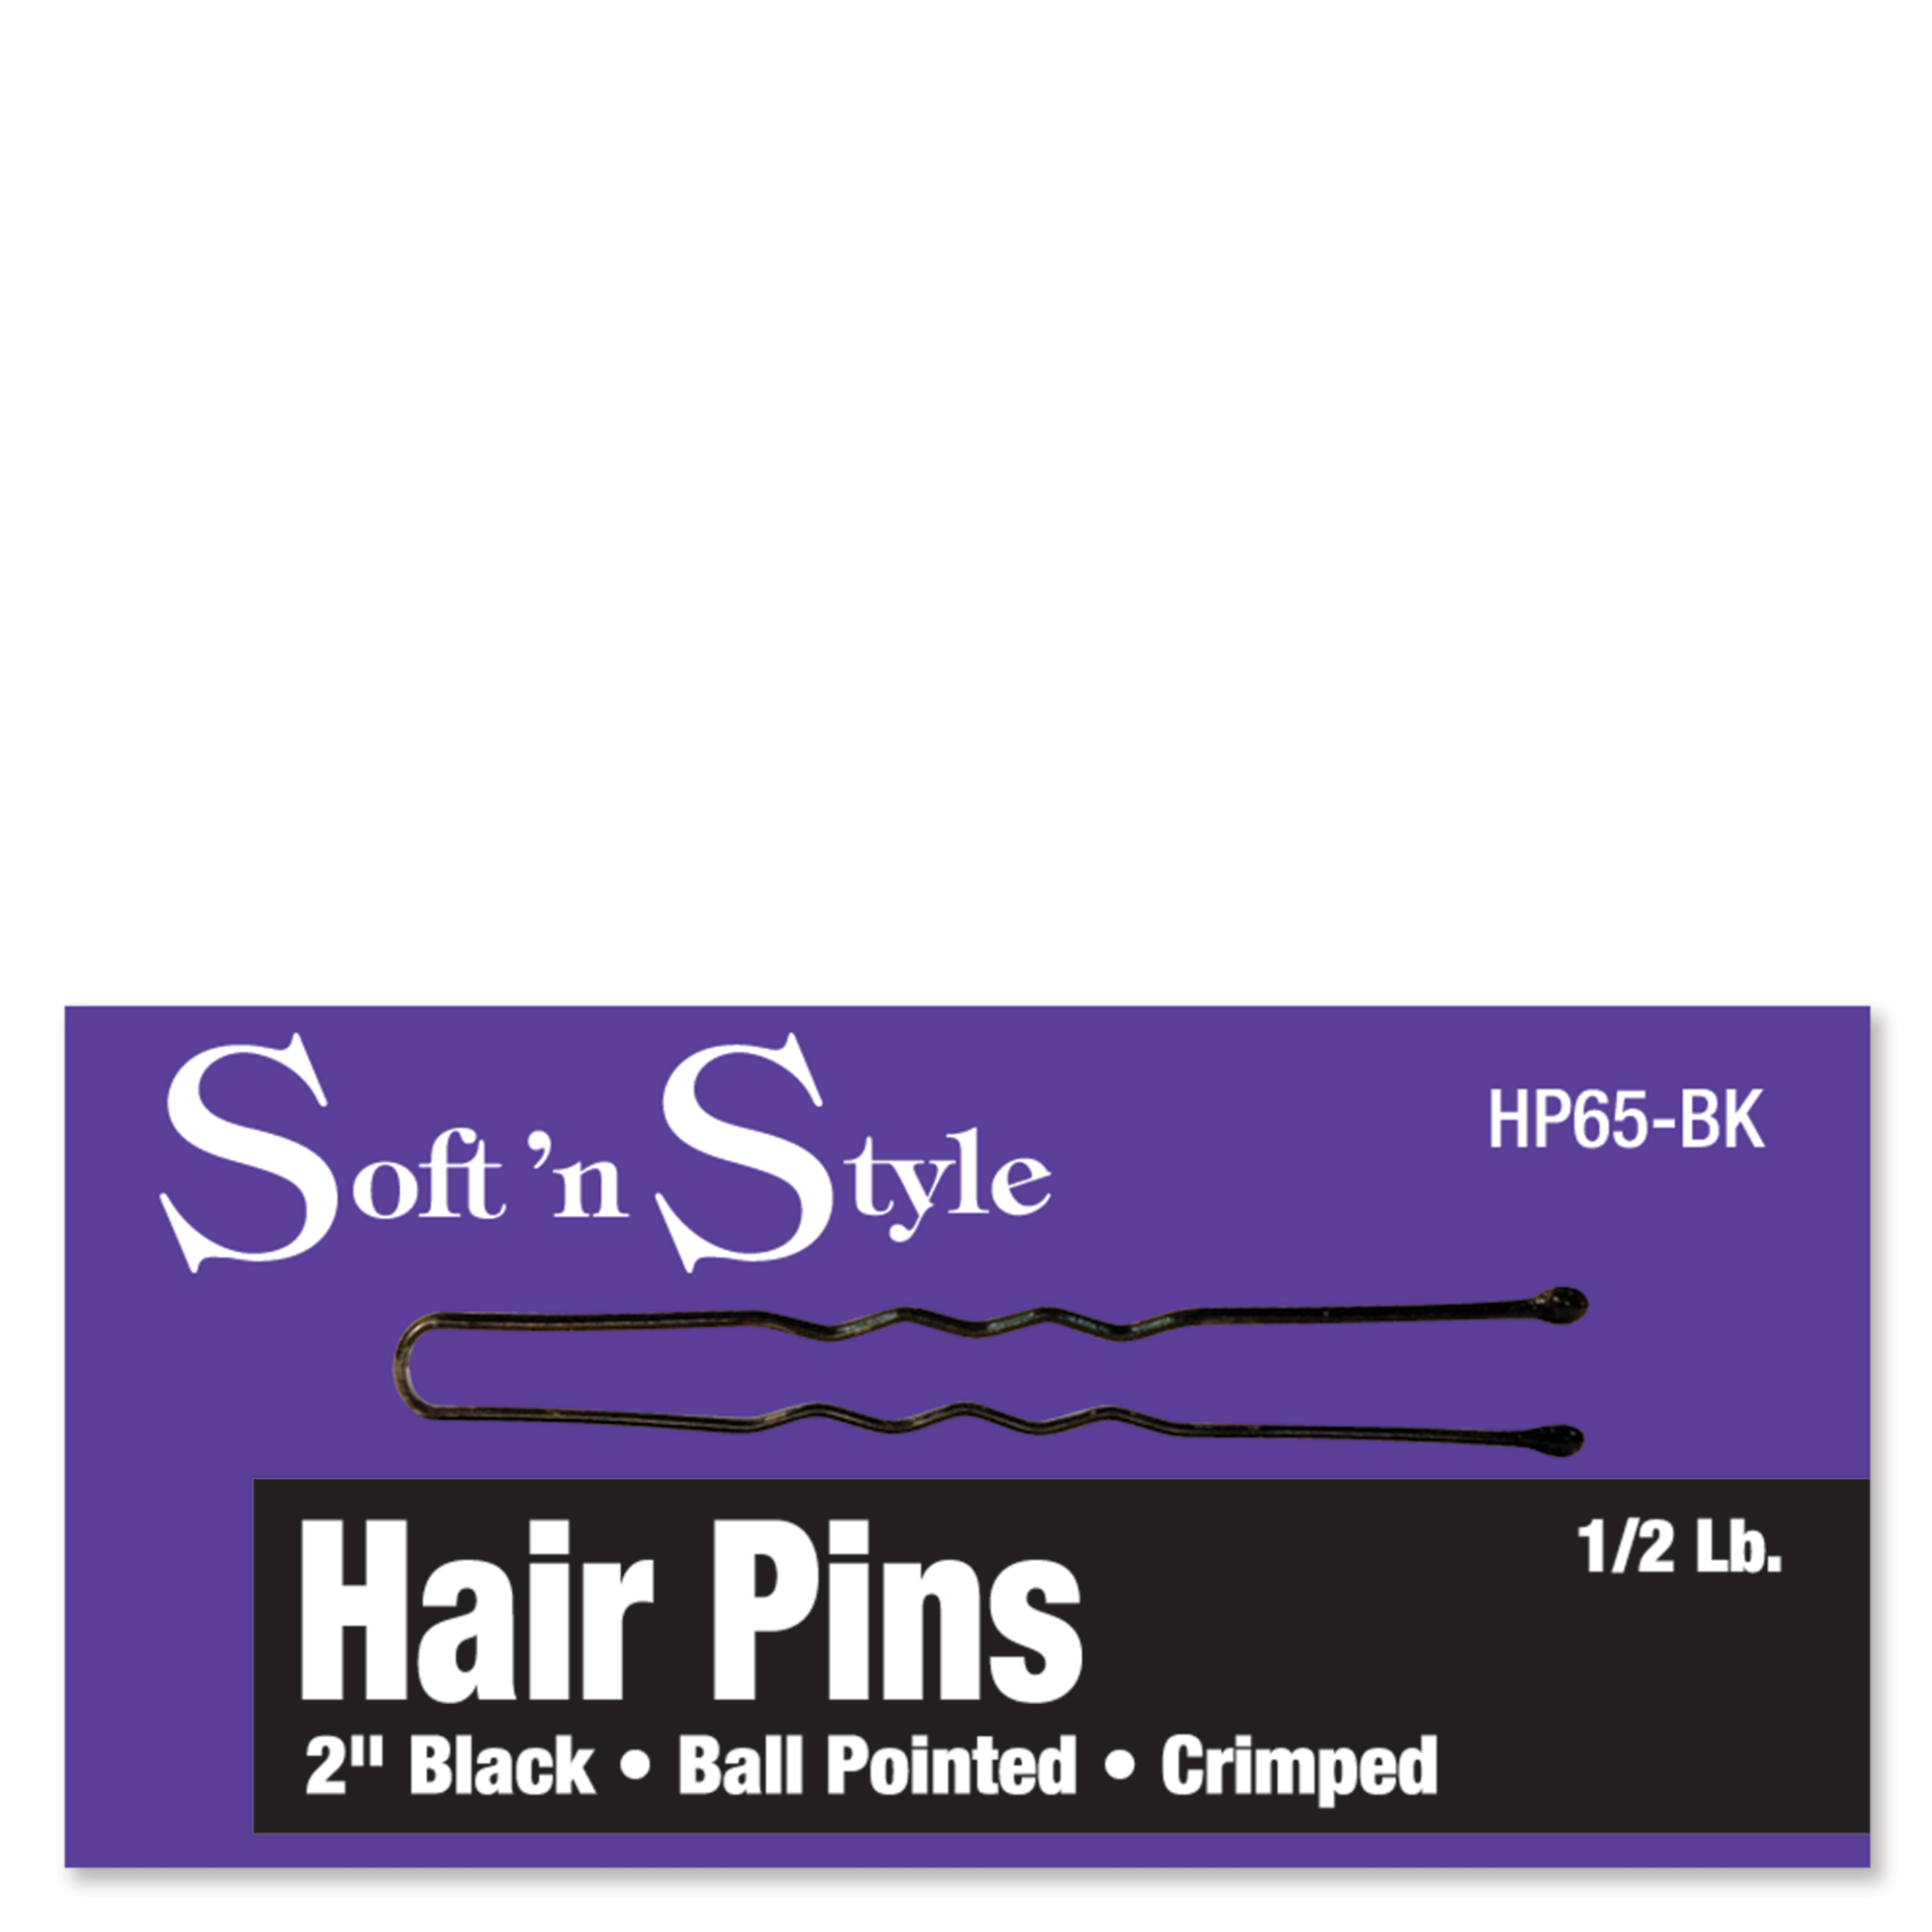 Hair Pins, Black, 1/2 lb. box - 2"